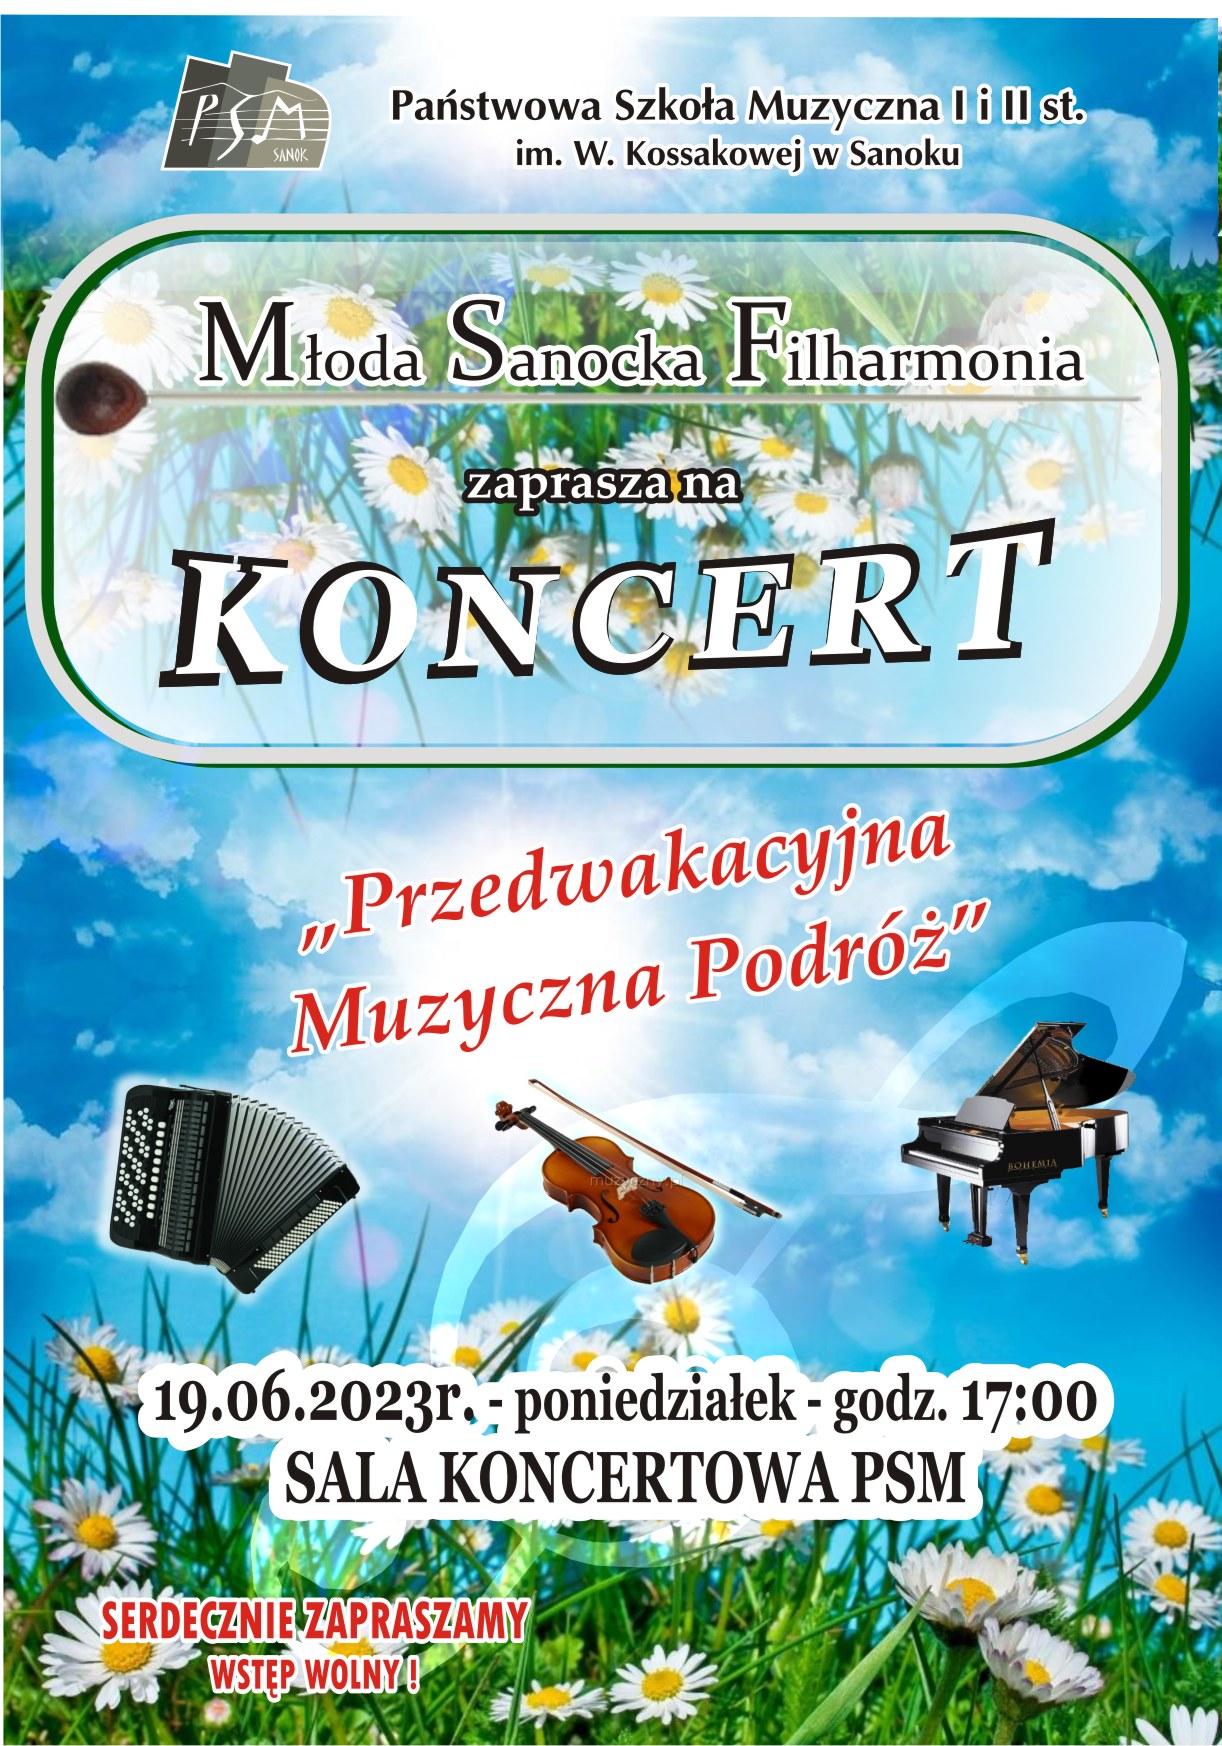 Plakat koncertu Młodej Sanockiej Filharmonii instrumenty muzyczne, w tle niebo oraz kwiaty.